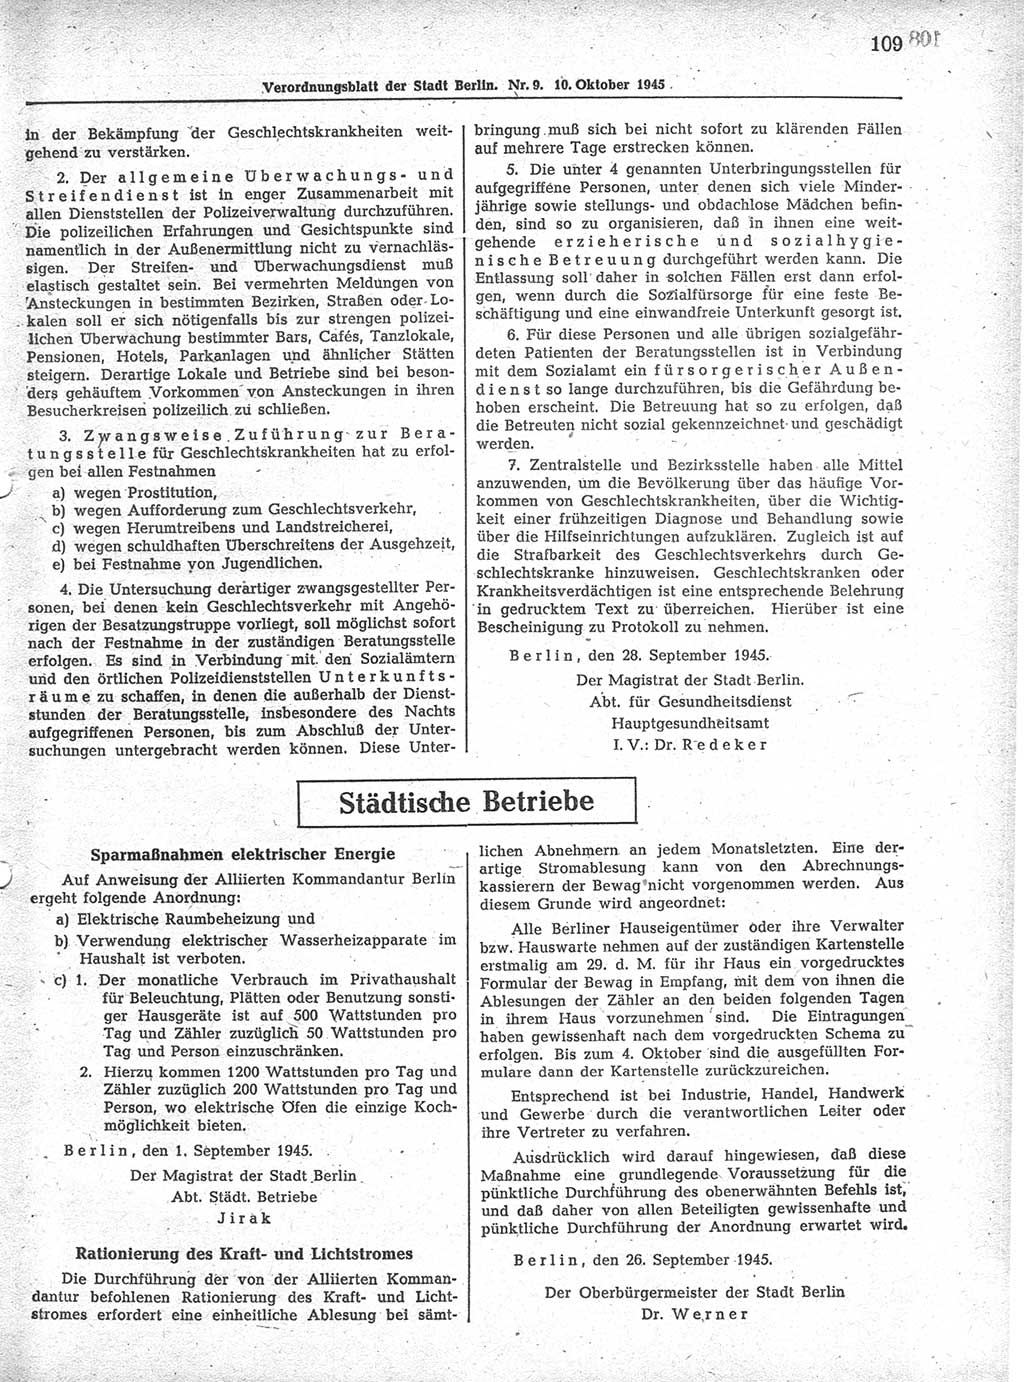 Verordnungsblatt (VOBl.) der Stadt Berlin 1945, Seite 109 (VOBl. Bln. 1945, S. 109)